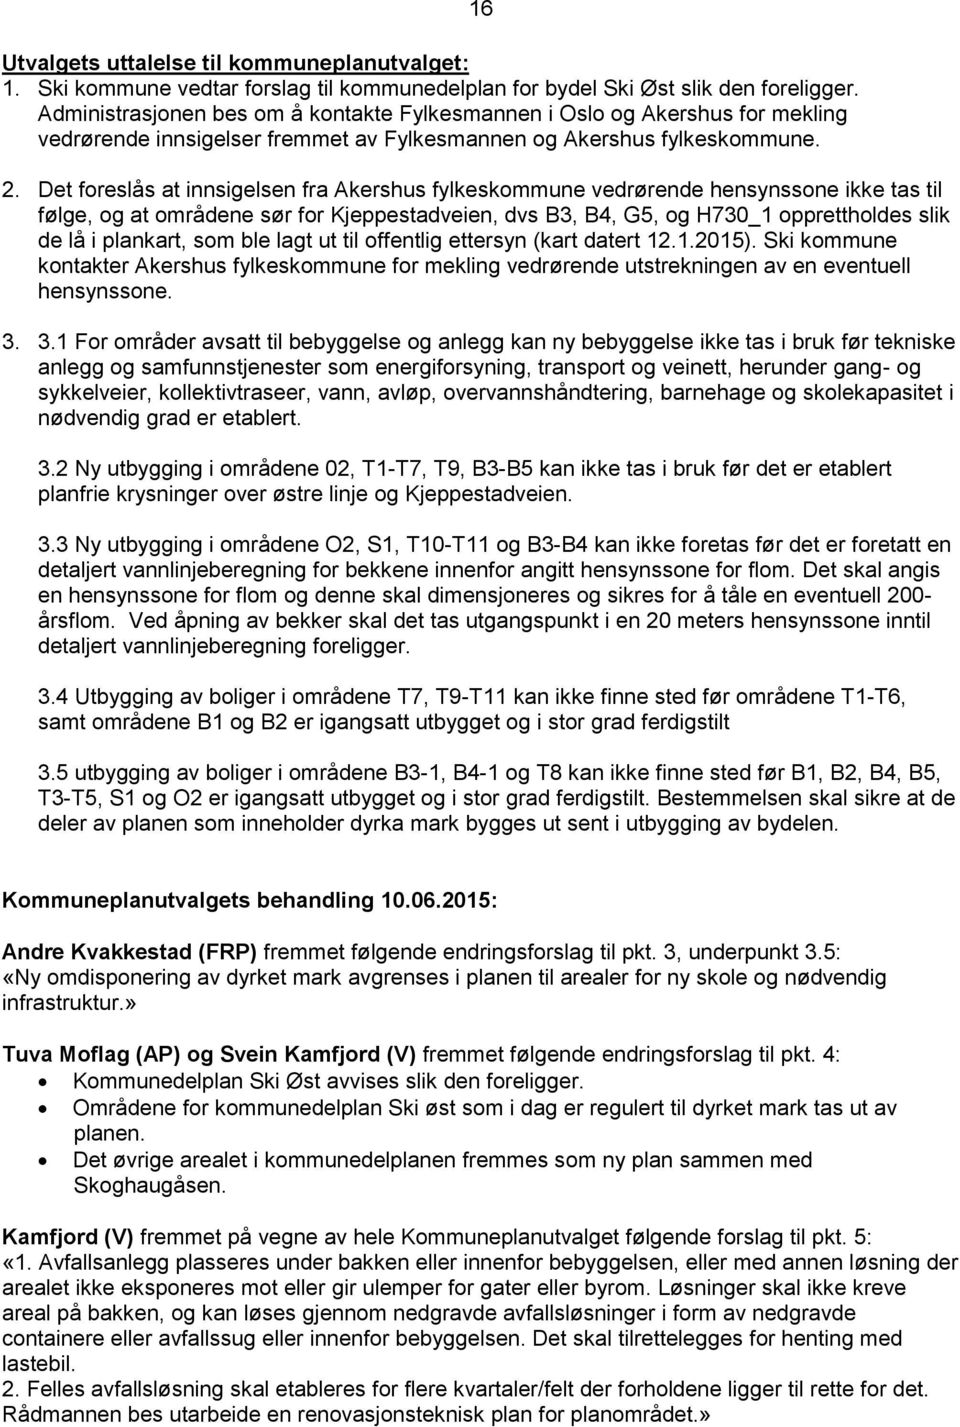 Det foreslås at innsigelsen fra Akershus fylkeskommune vedrørende hensynssone ikke tas til følge, og at områdene sør for Kjeppestadveien, dvs B3, B4, G5, og H730_1 opprettholdes slik de lå i